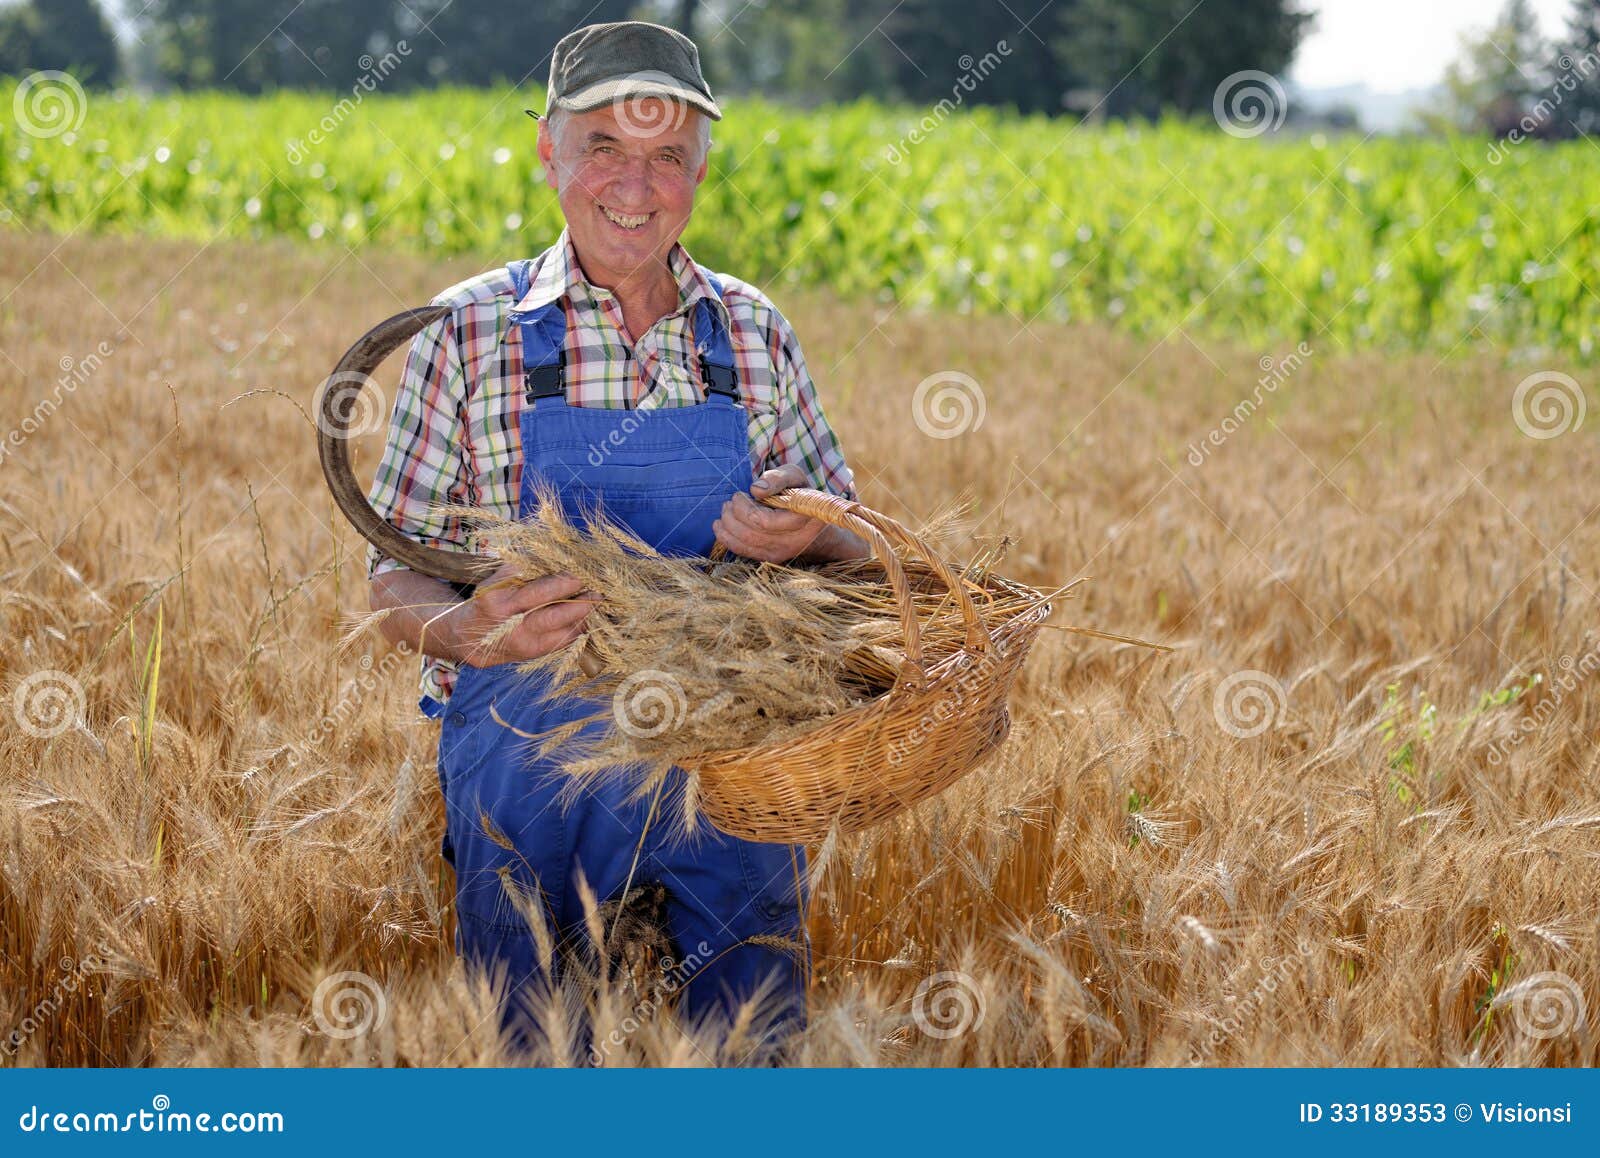 Какую работу выполняет фермер. Фермер и пшеничное поле. Фермер в поле. Фермер в поле пшеница. Мужчина фермер в поле пшеницы.